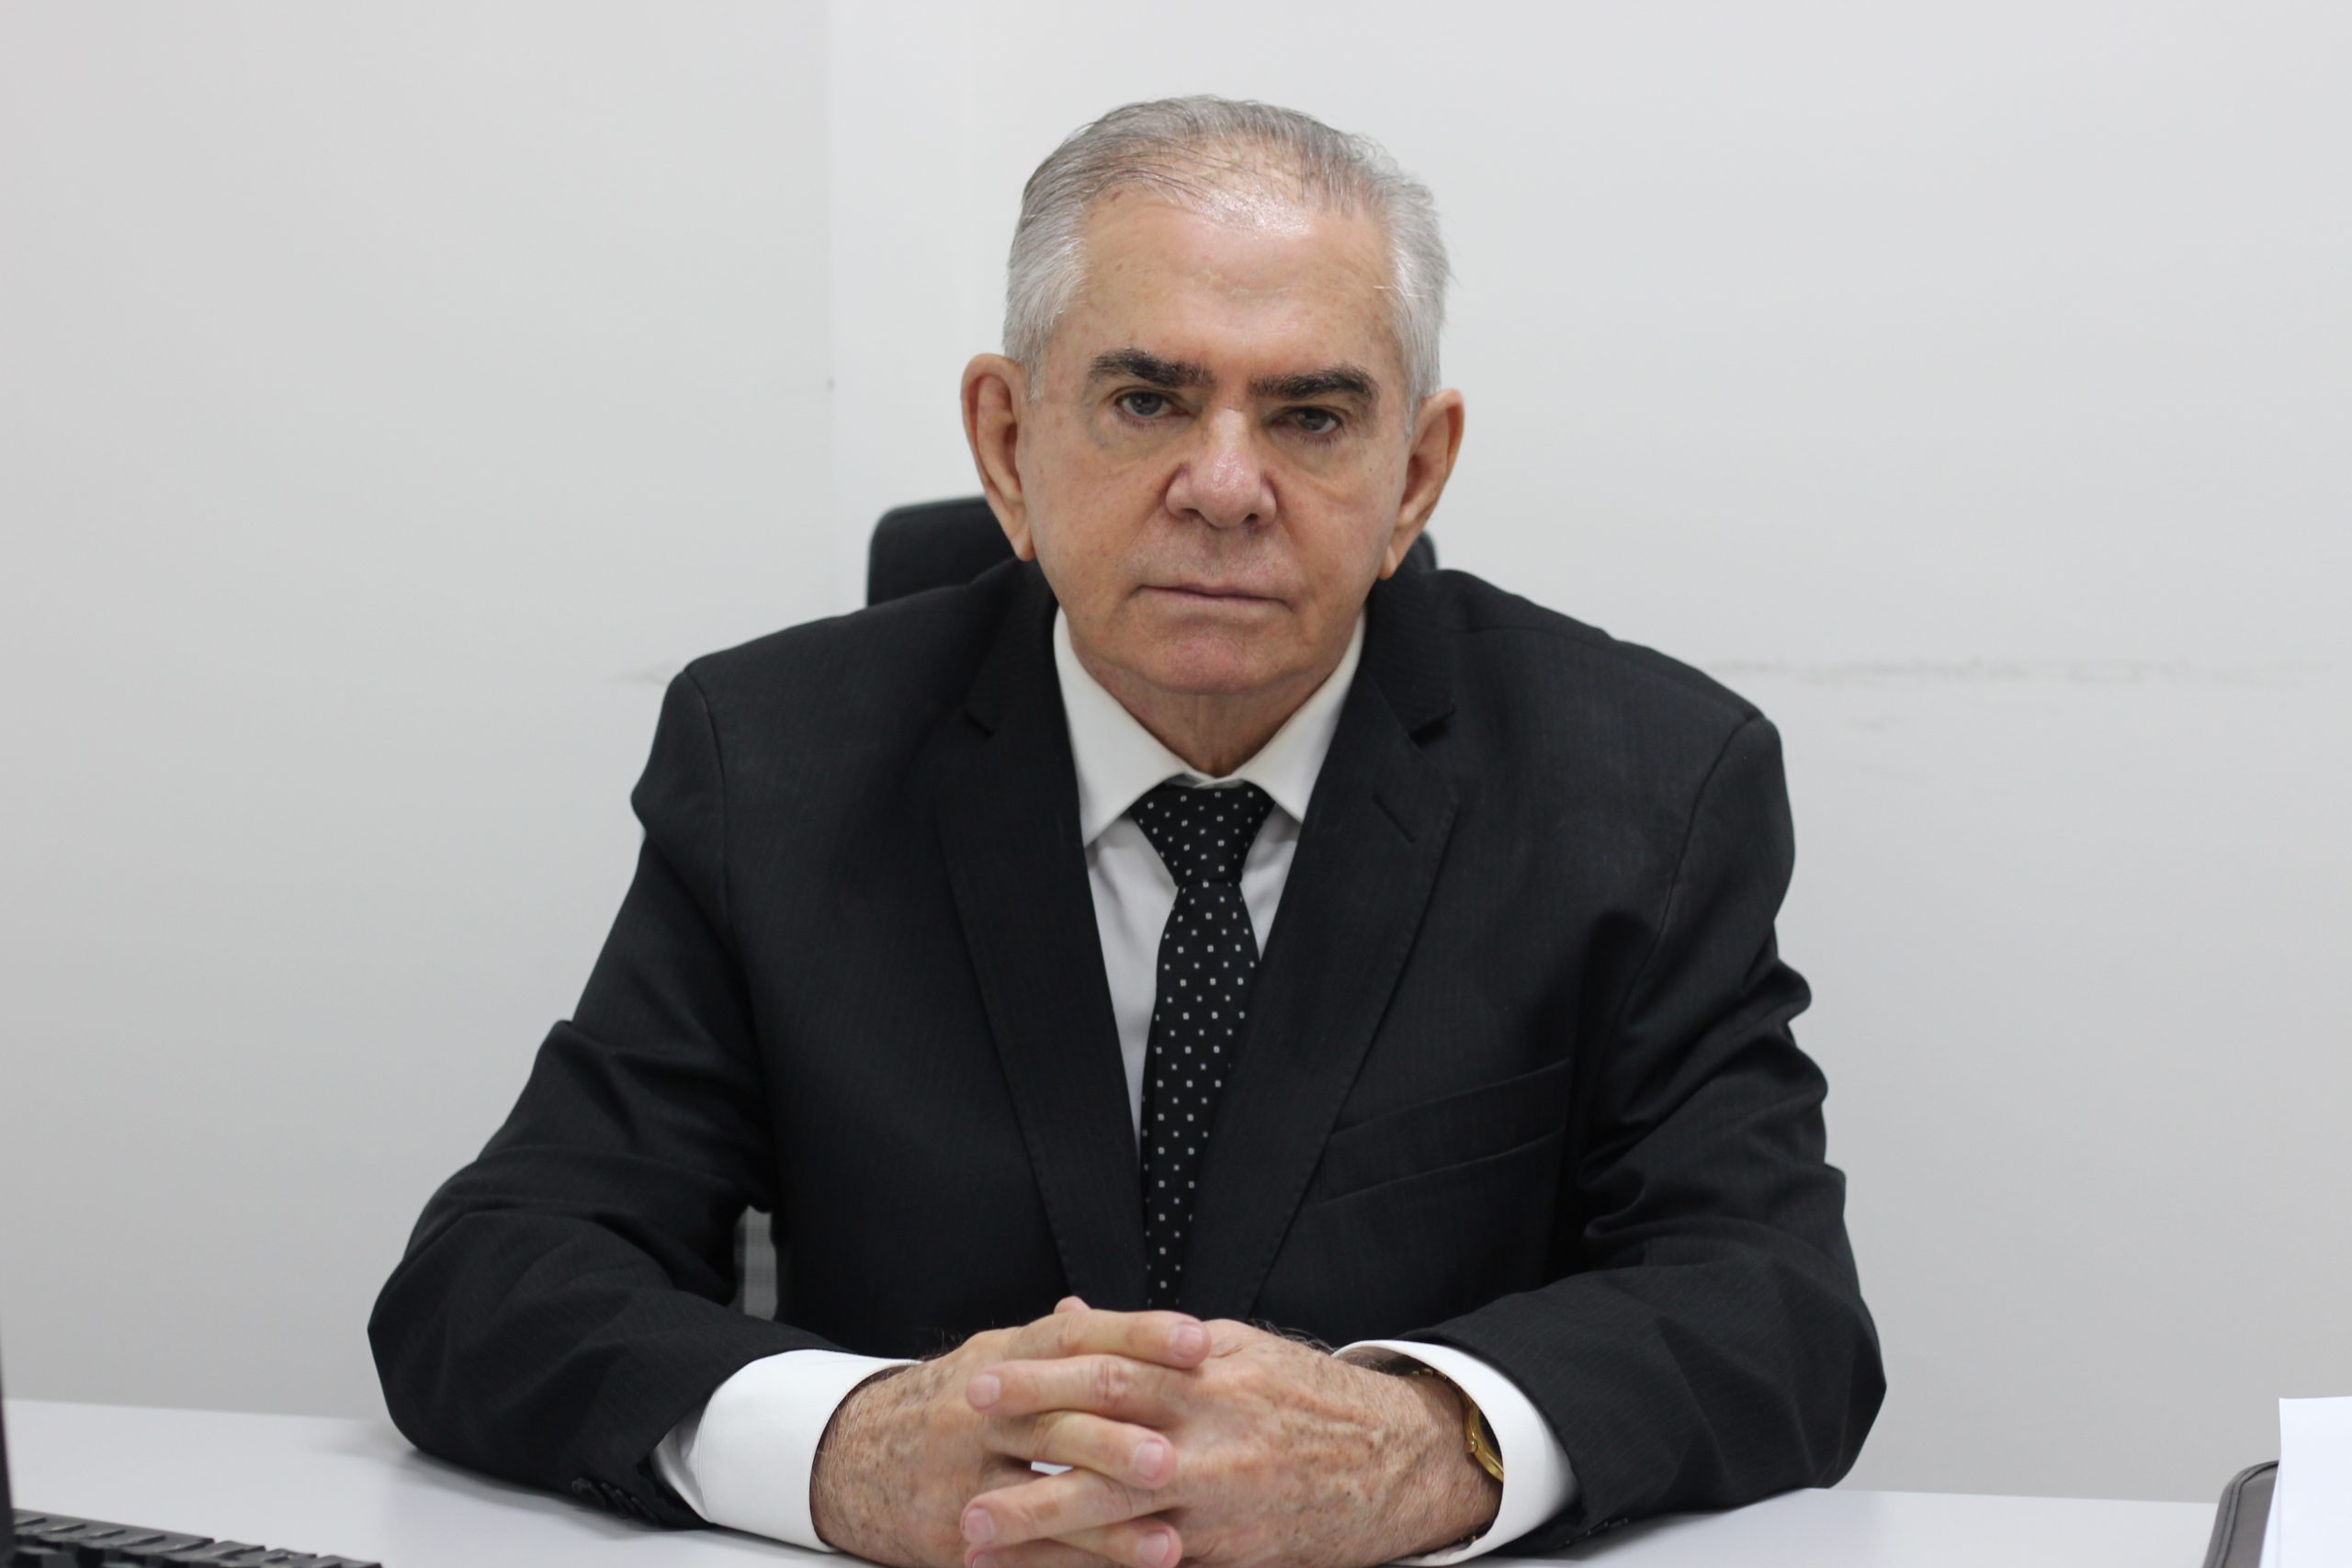 Médico Leopoldino Ferreira Filho esta sentado em uma cadeira com as mãos em cima da mesa. Usa gravata com bolinhas branca, tem cabelos grisalhos. 